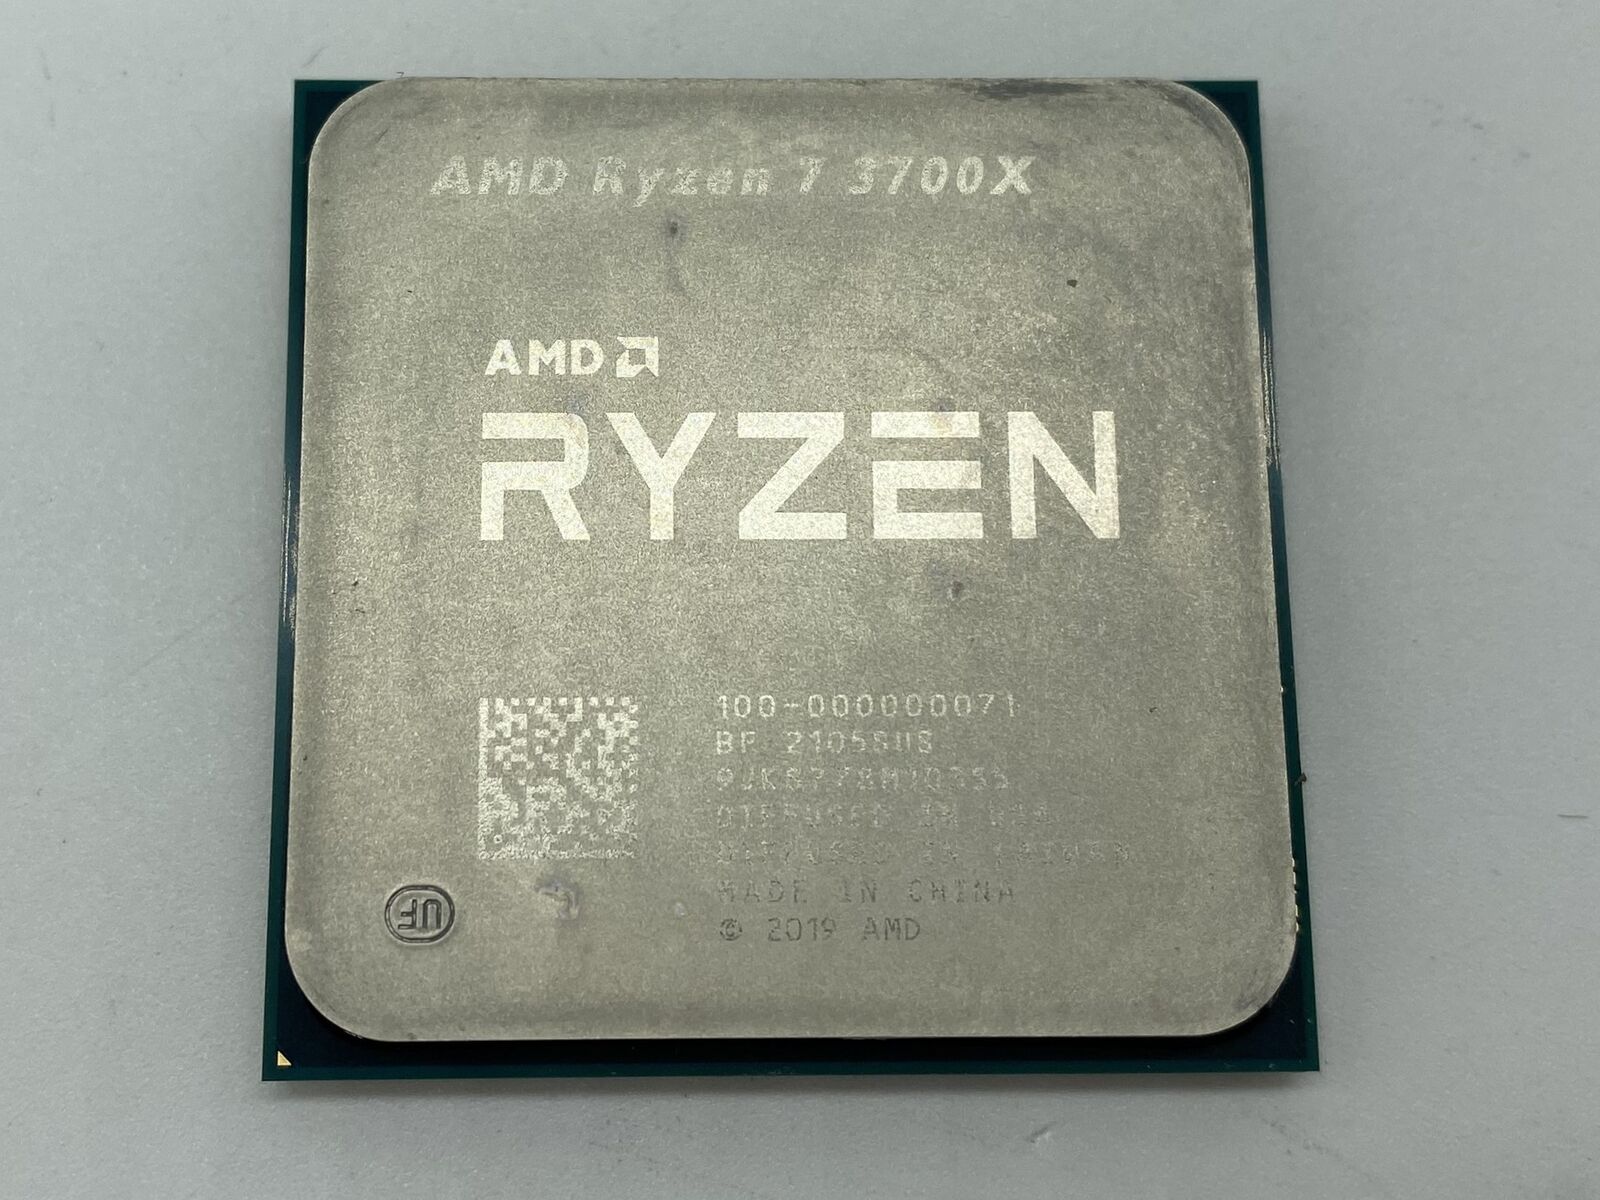 AMD Ryzen 7 3700X 3.6 GHz Octa-Core Am4 CPU Processor Used